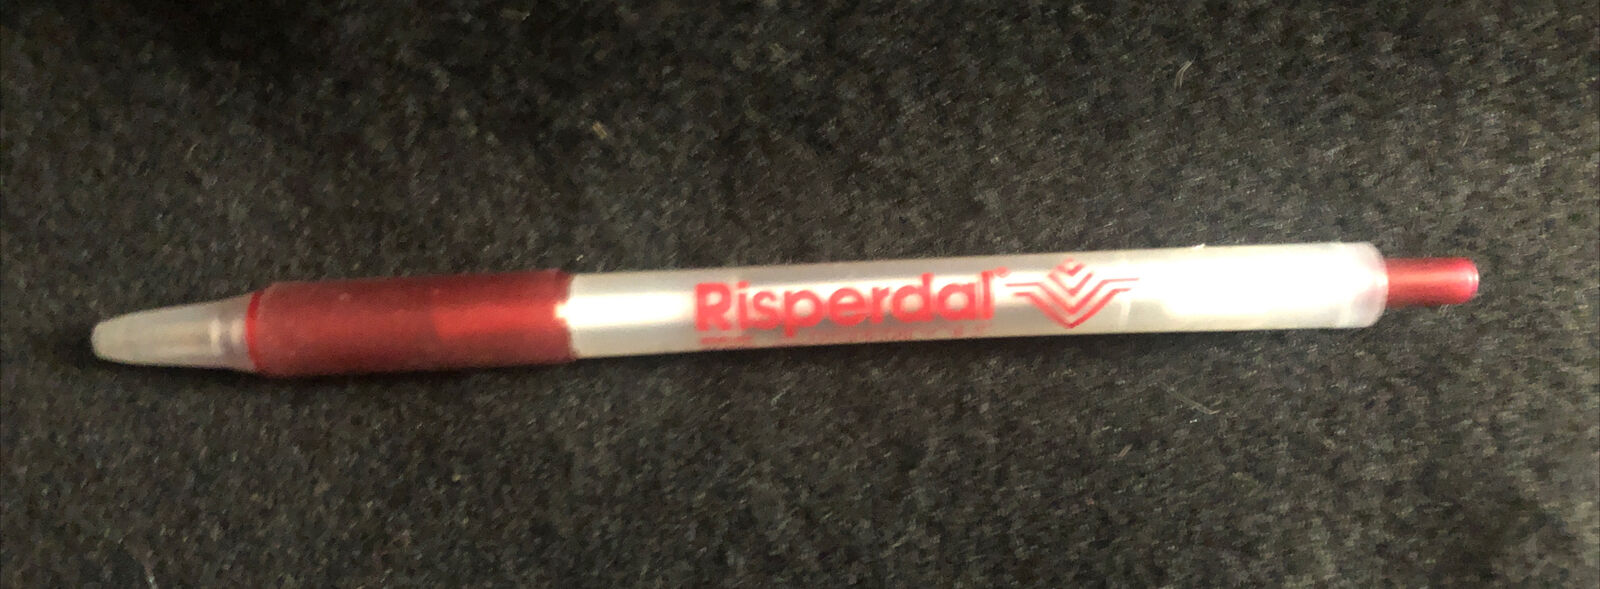 Risperdal Drug Rep Pharmaceutical Pen Pharma Advertising Risperidone